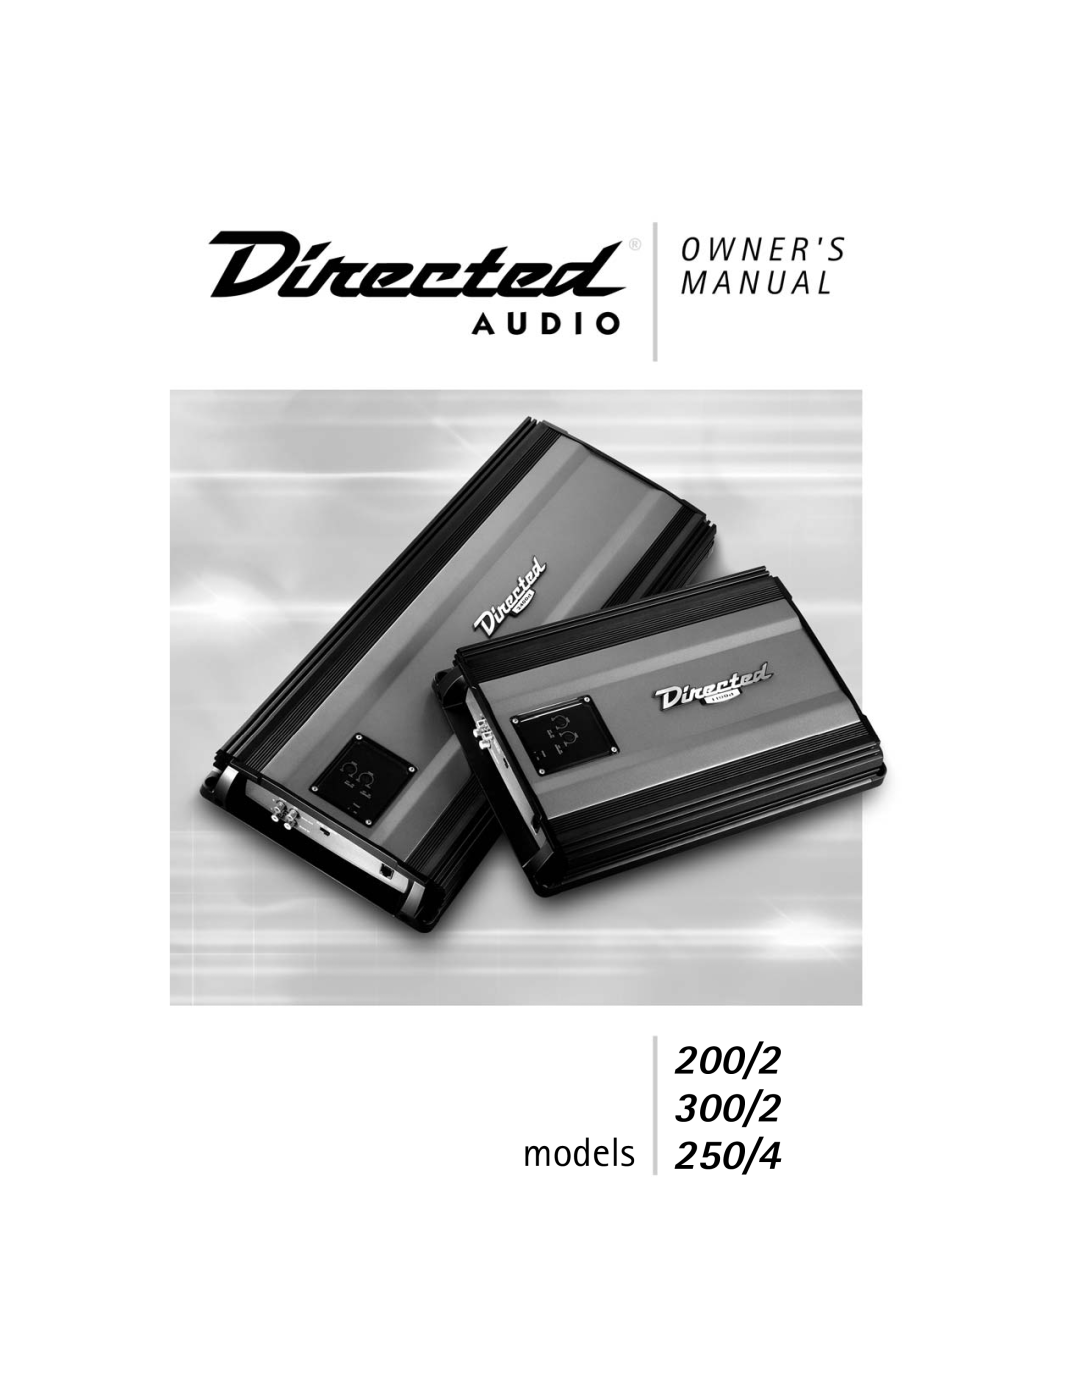 Directed Audio 200/2 manual 300/2 models 250/4 